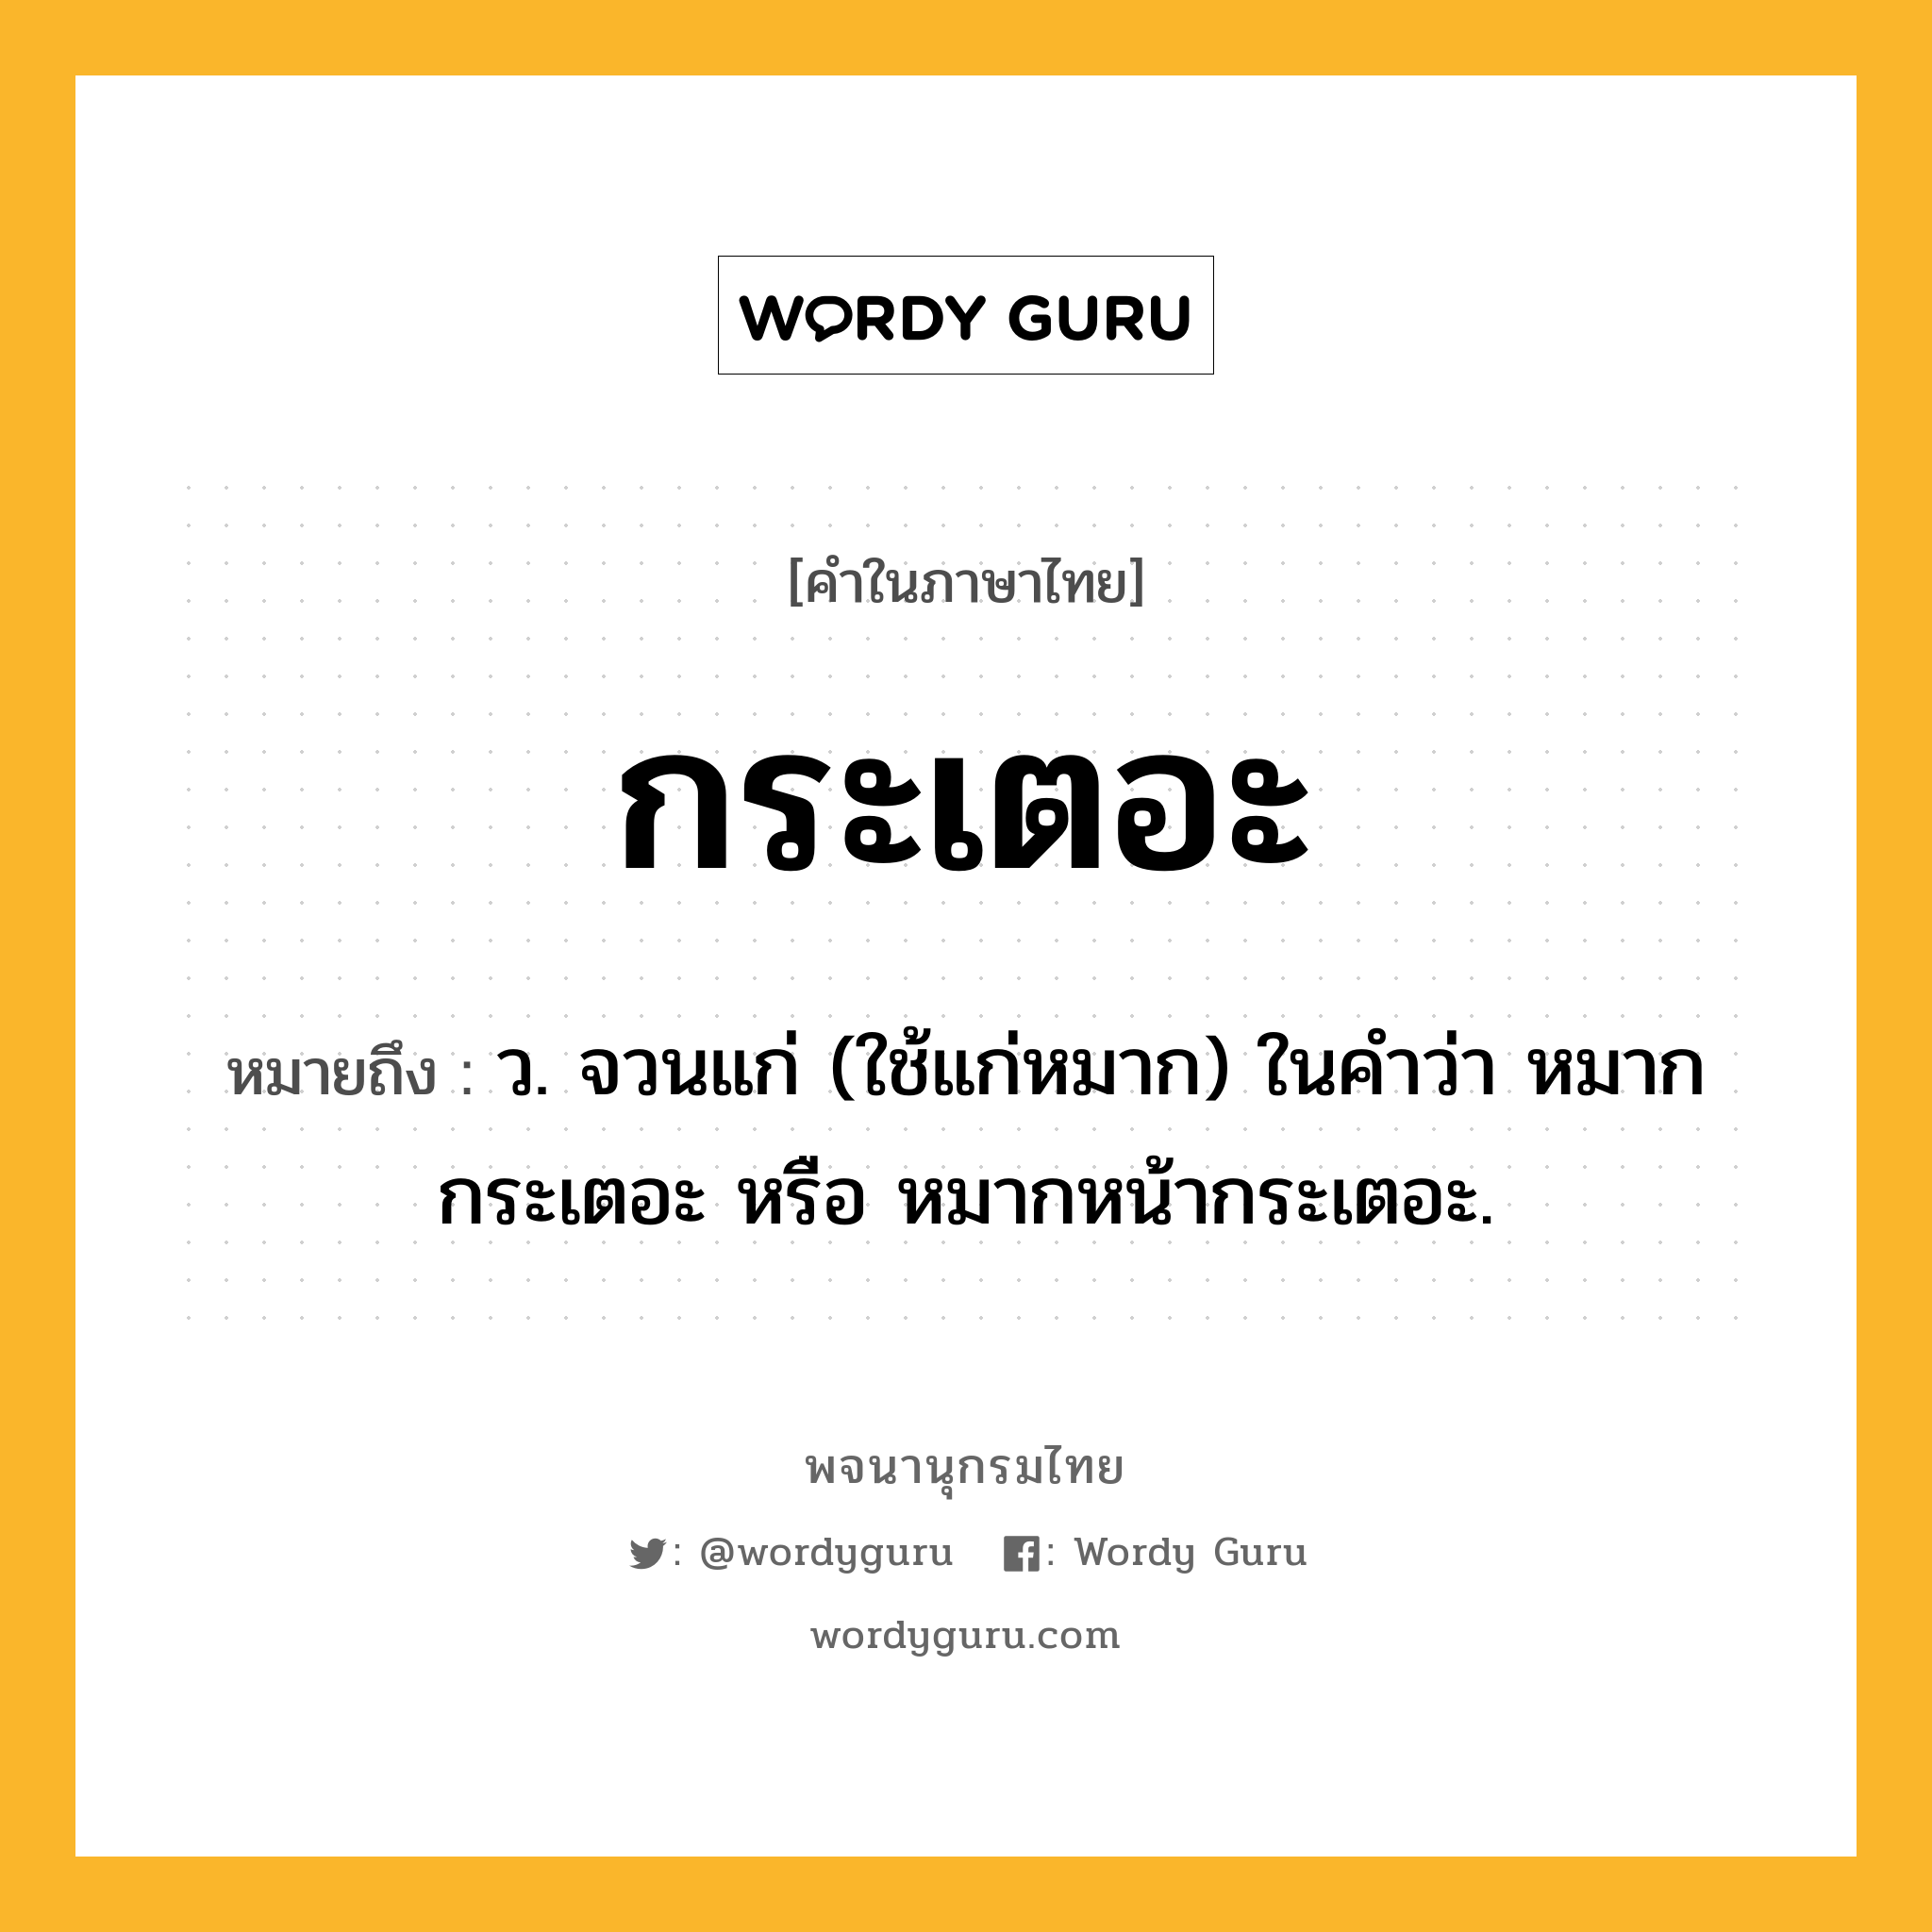 กระเตอะ หมายถึงอะไร?, คำในภาษาไทย กระเตอะ หมายถึง ว. จวนแก่ (ใช้แก่หมาก) ในคําว่า หมากกระเตอะ หรือ หมากหน้ากระเตอะ.